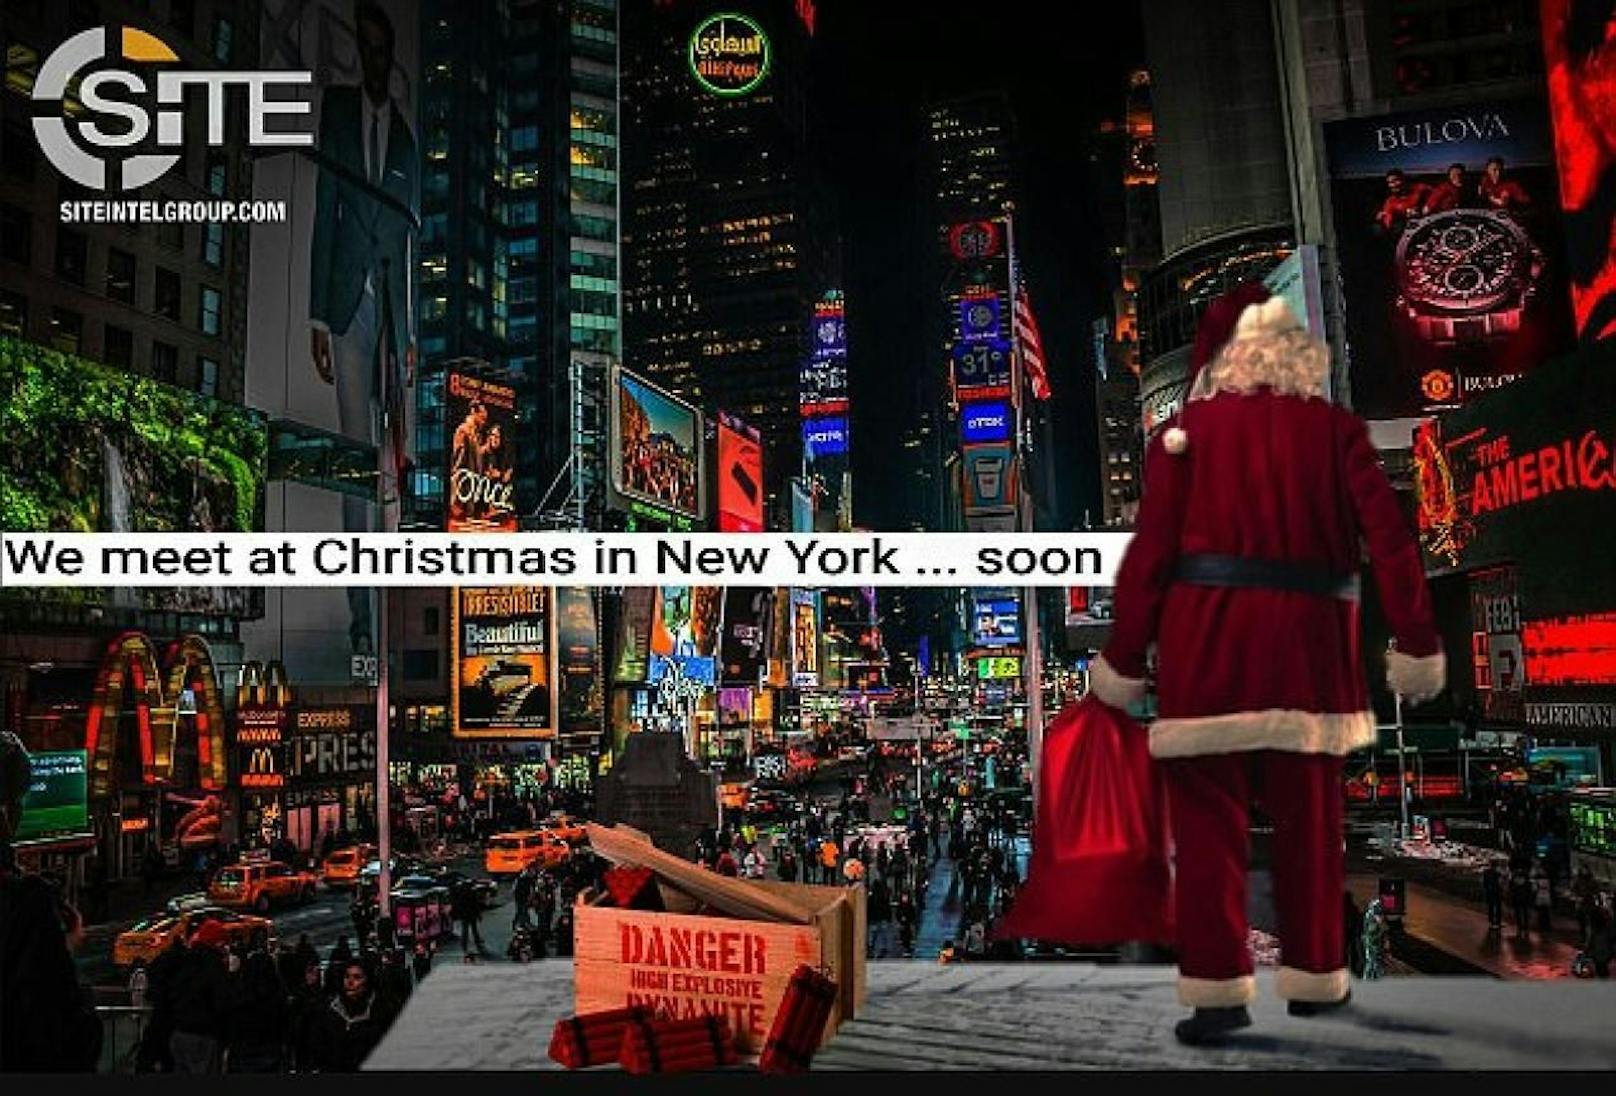 Gruselig: &quot;Wir sehen uns bald an Weihnachten in New York&quot; schrieb der IS. Der Weihnachtsmann steht neben einer Kiste mit Dynamit. 